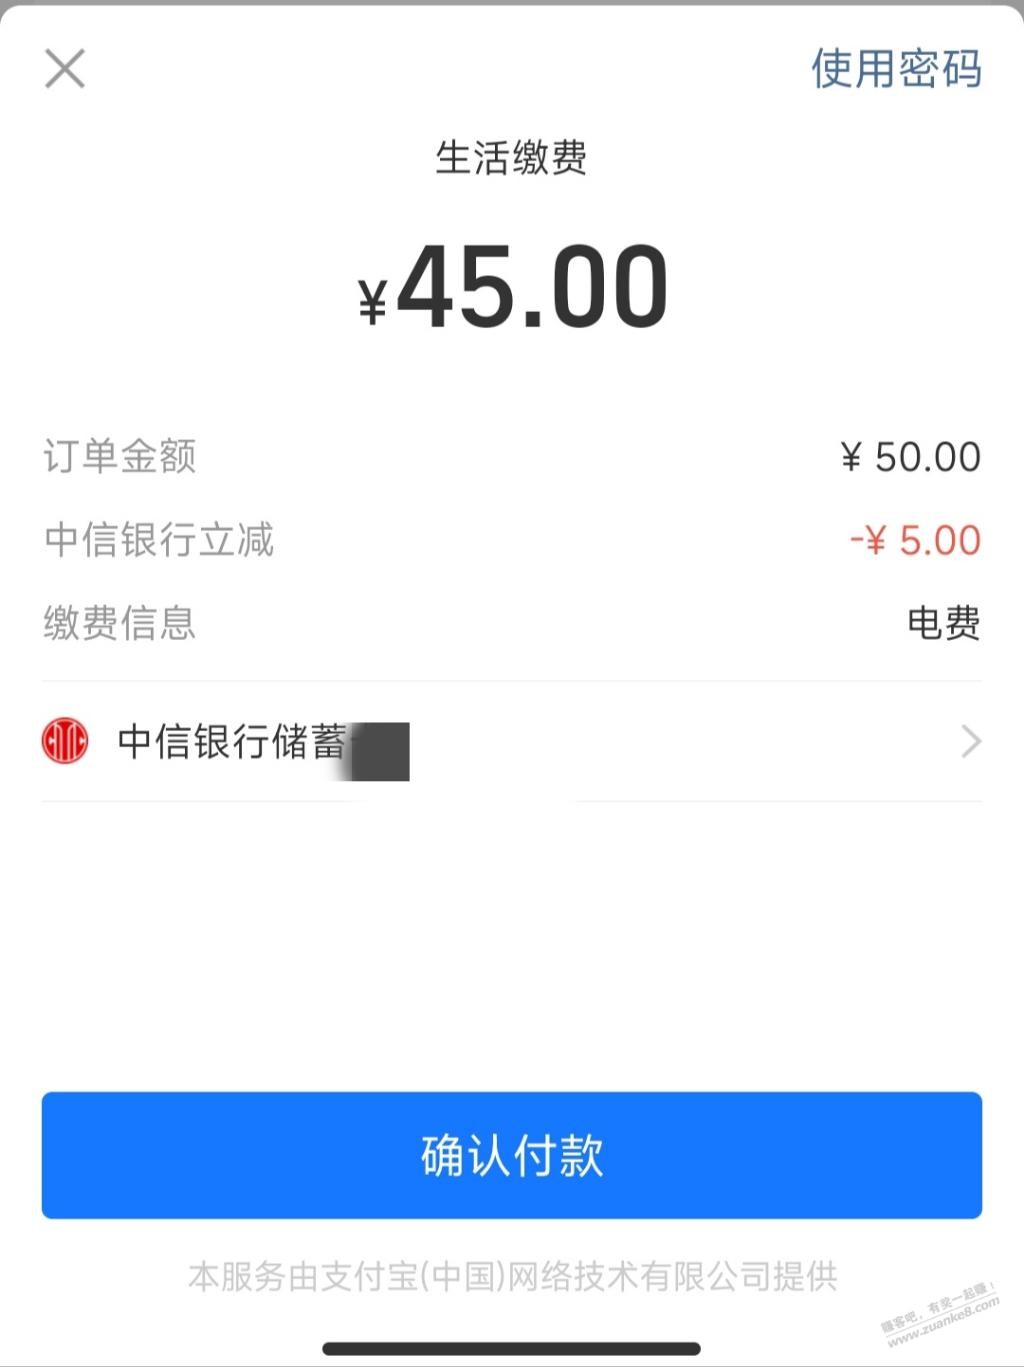 河北中信储蓄卡 支付宝电费50-5-惠小助(52huixz.com)